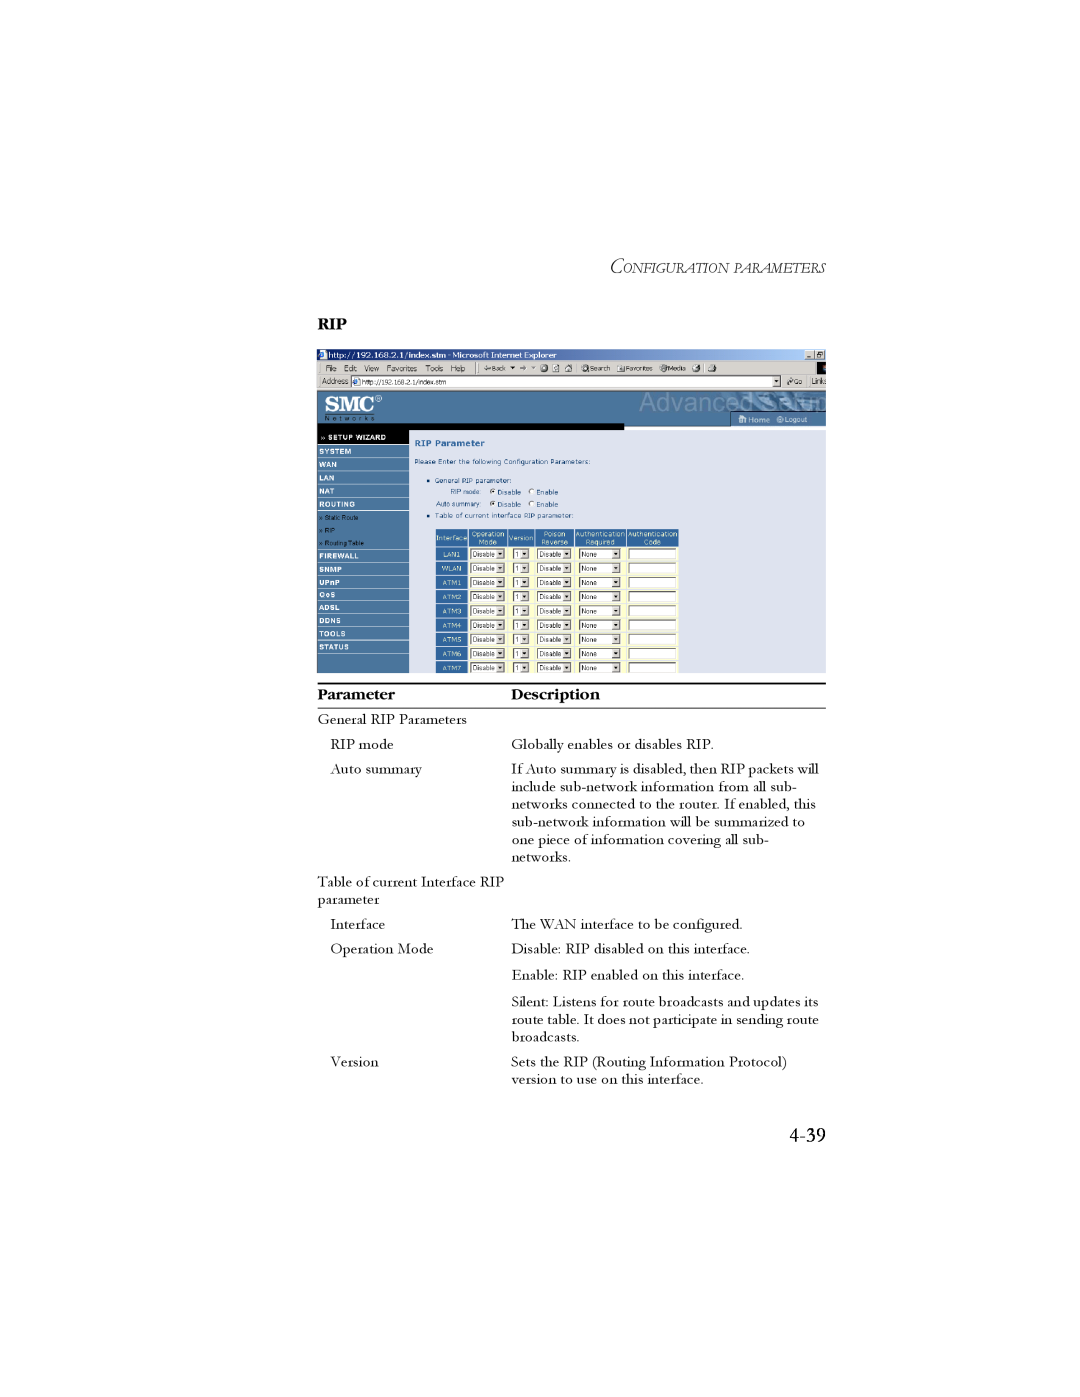 SMC Networks SMC7904BRB2 manual 4-39, Parameter, Description 